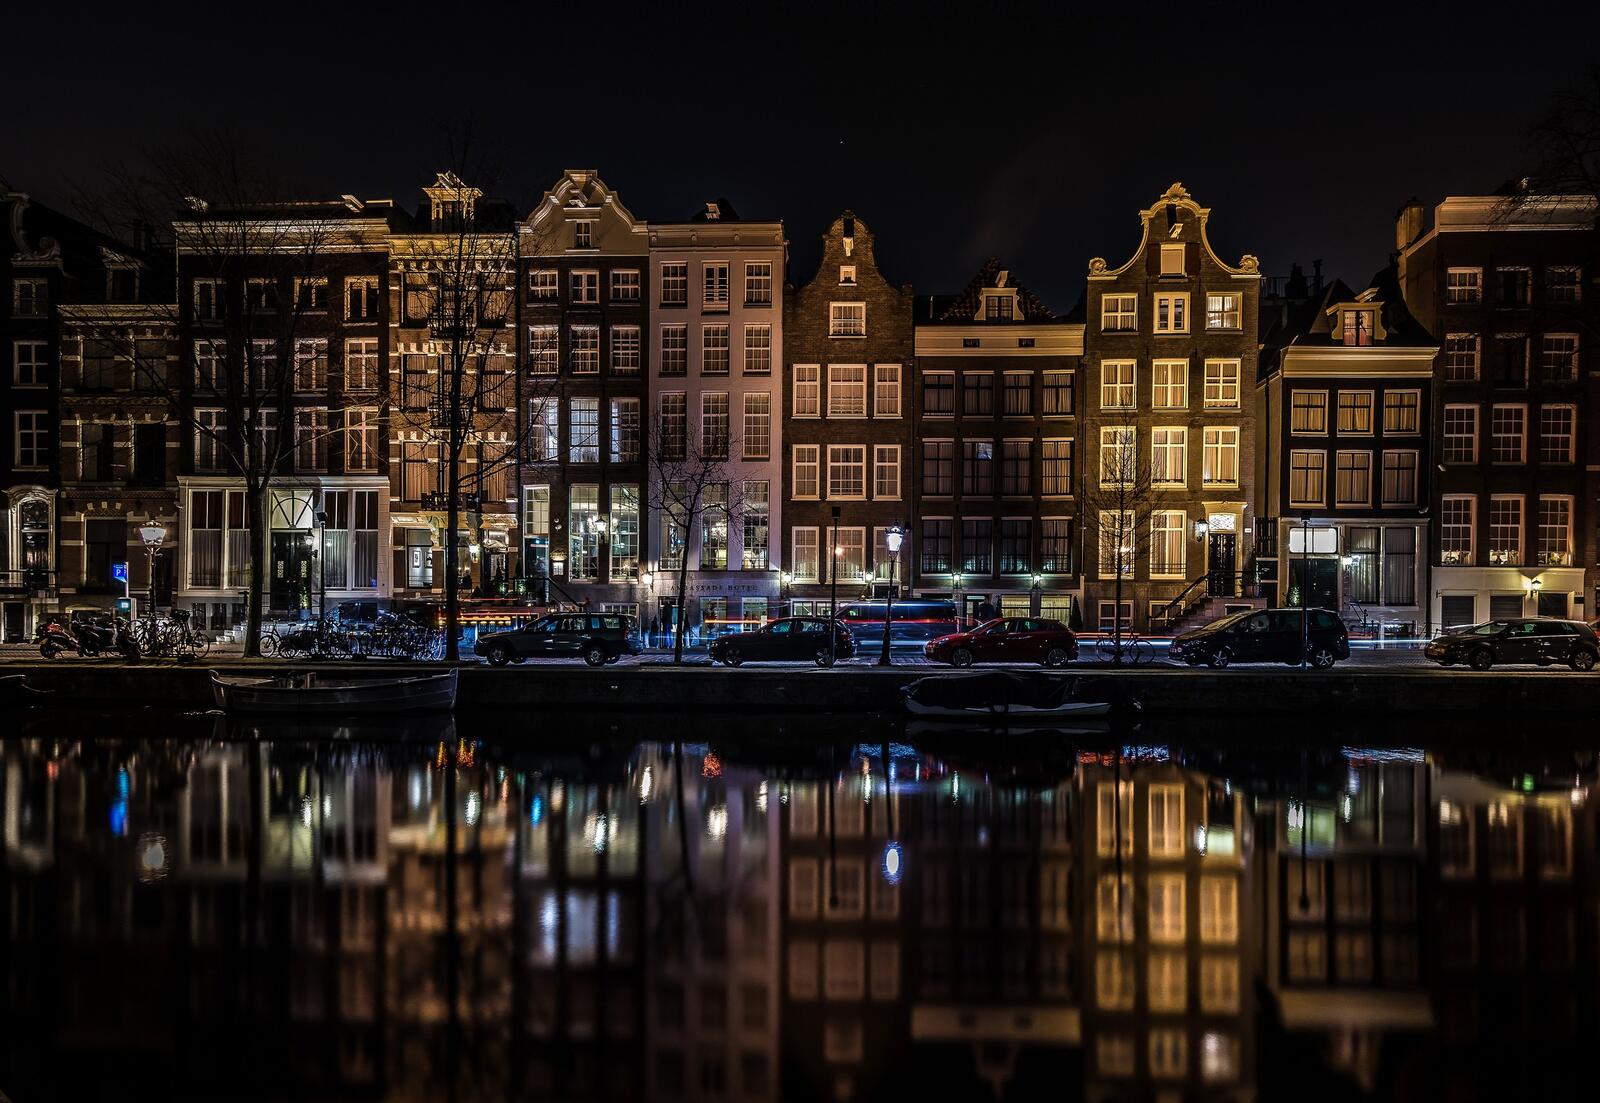 Обои Нидерланды Амстердам река на рабочий стол